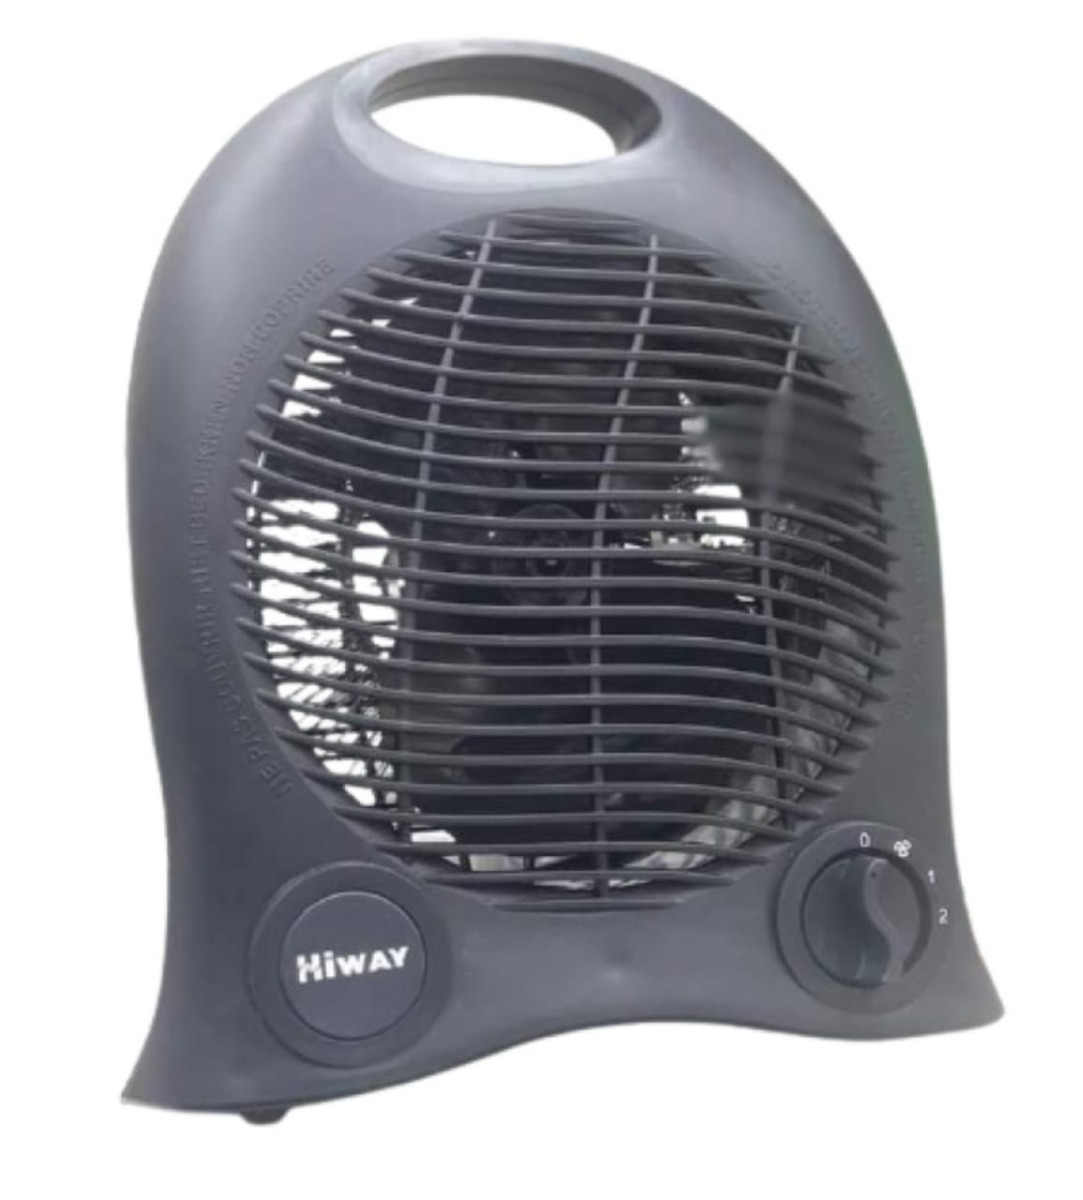 High Way Electric Fan Heater, 2000 Watt, Black- KY6400